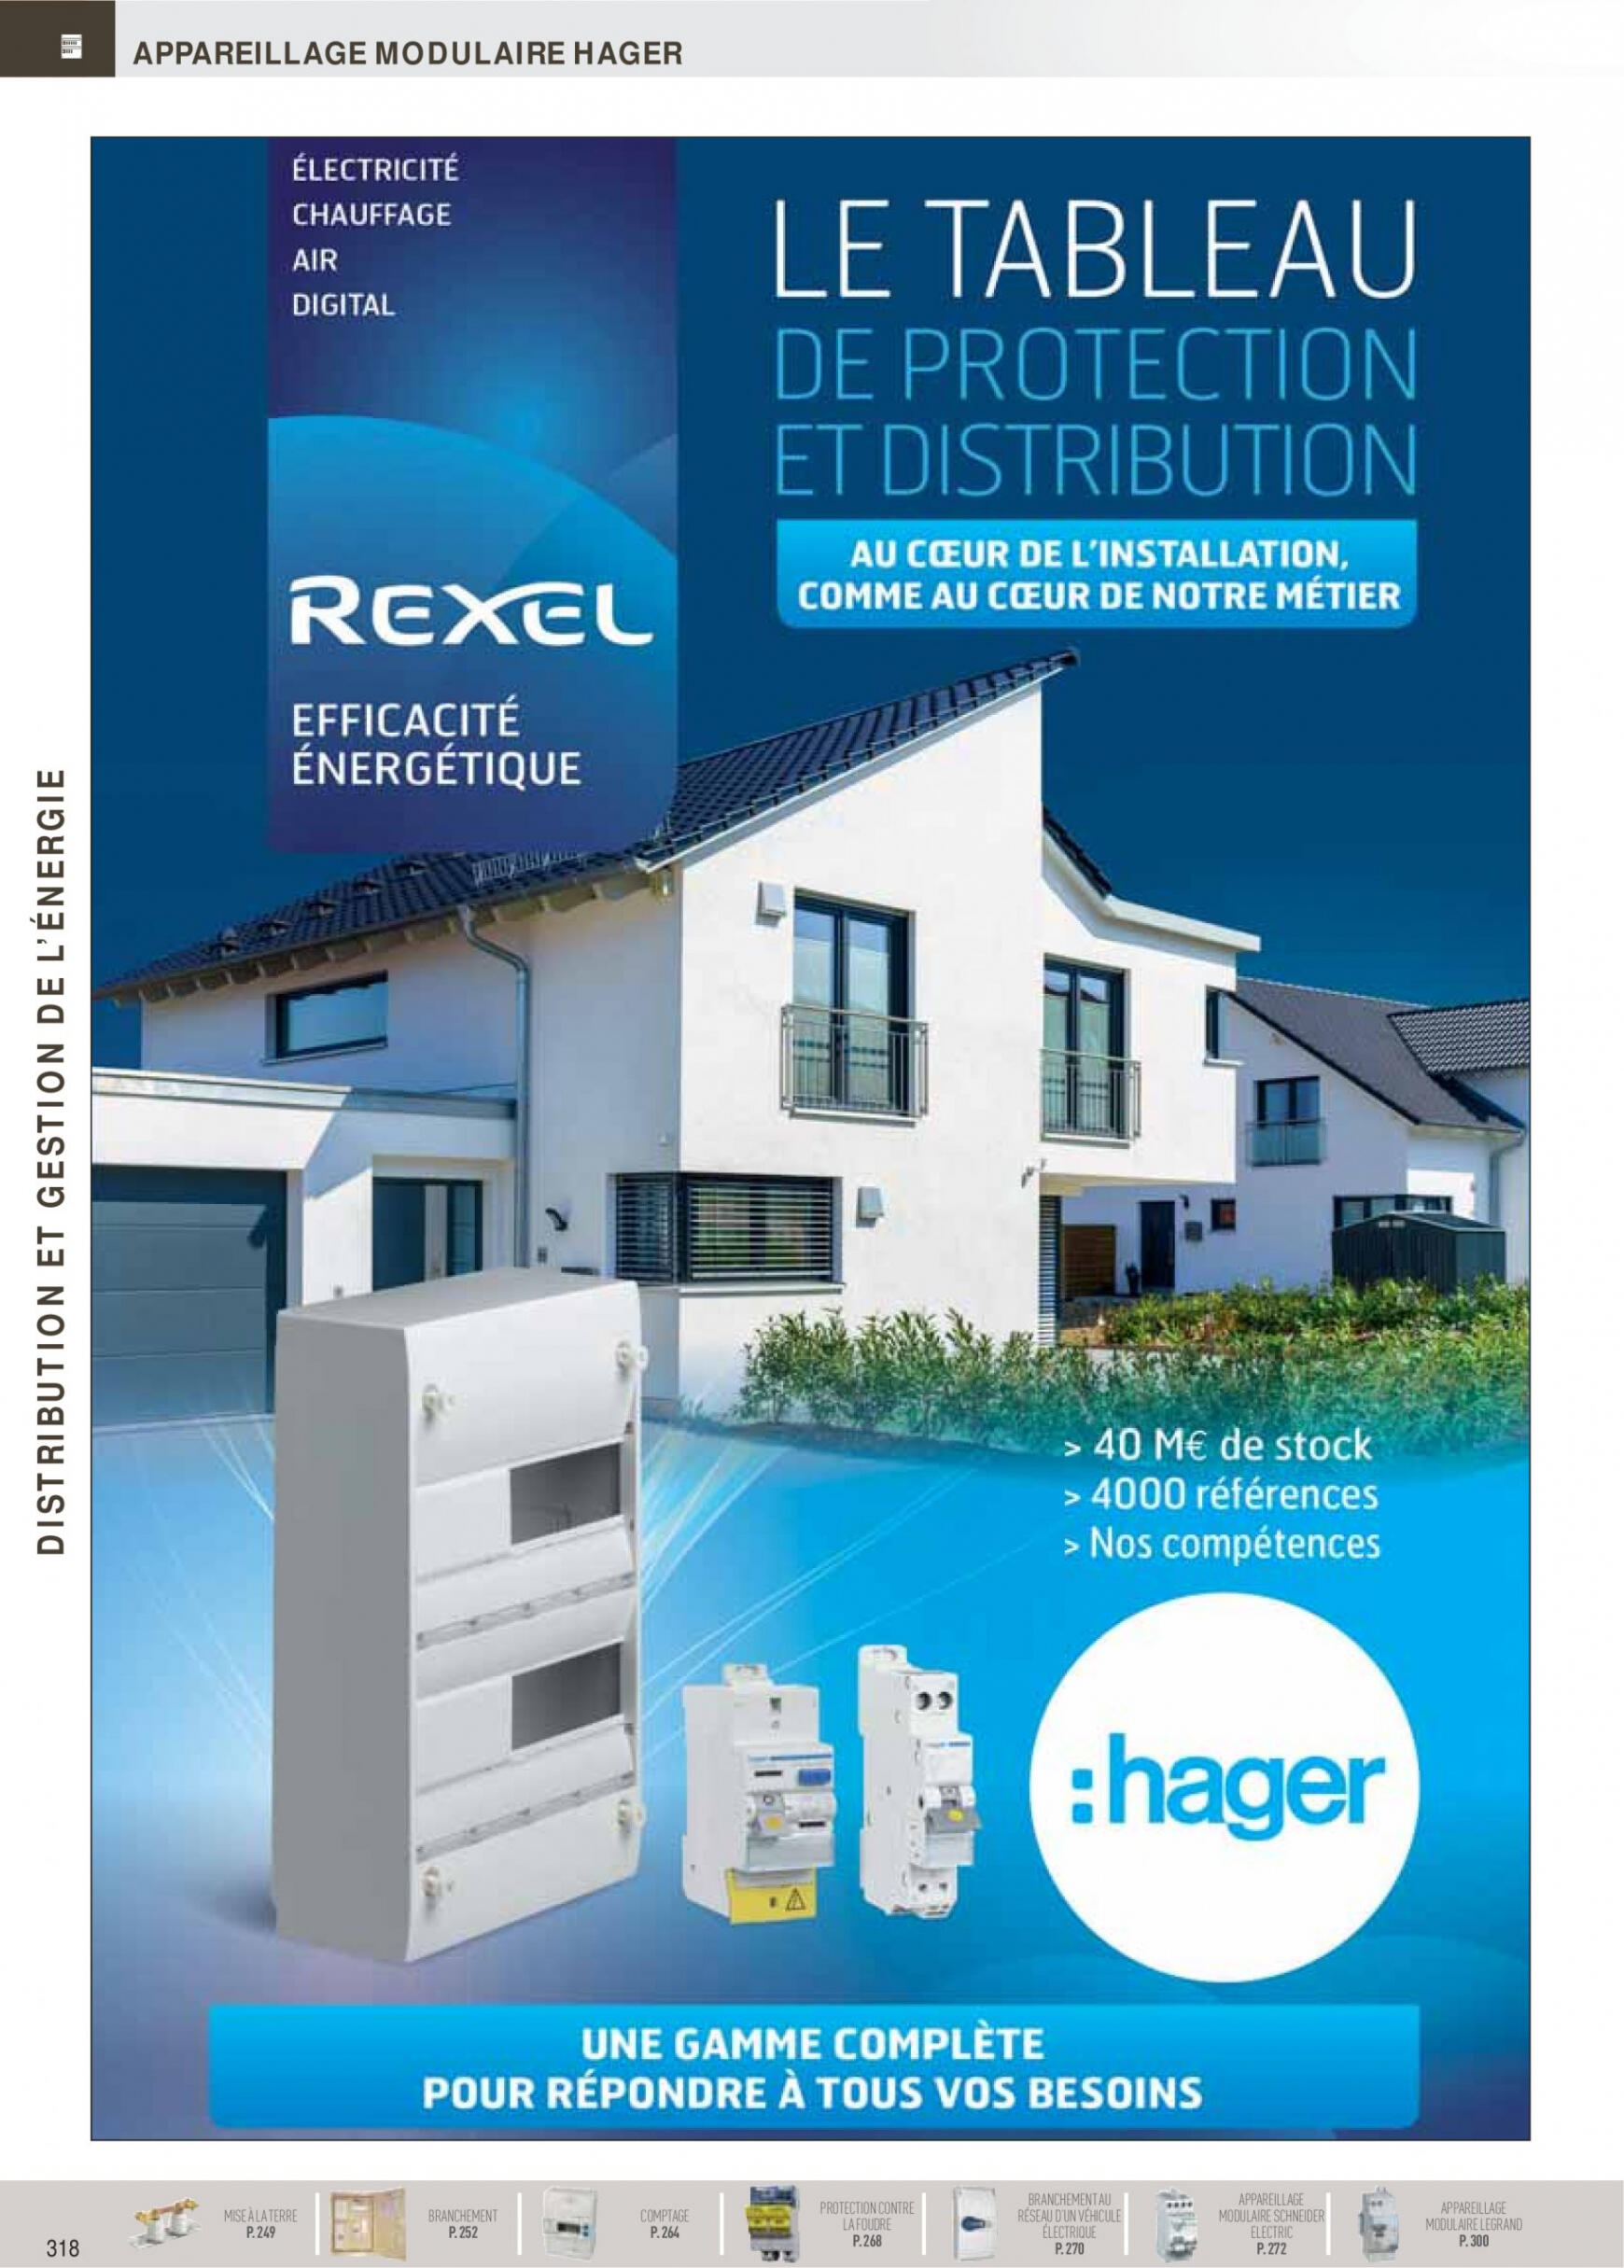 rexel - Rexel - Distribution et Gestion de l'Energie - page: 72